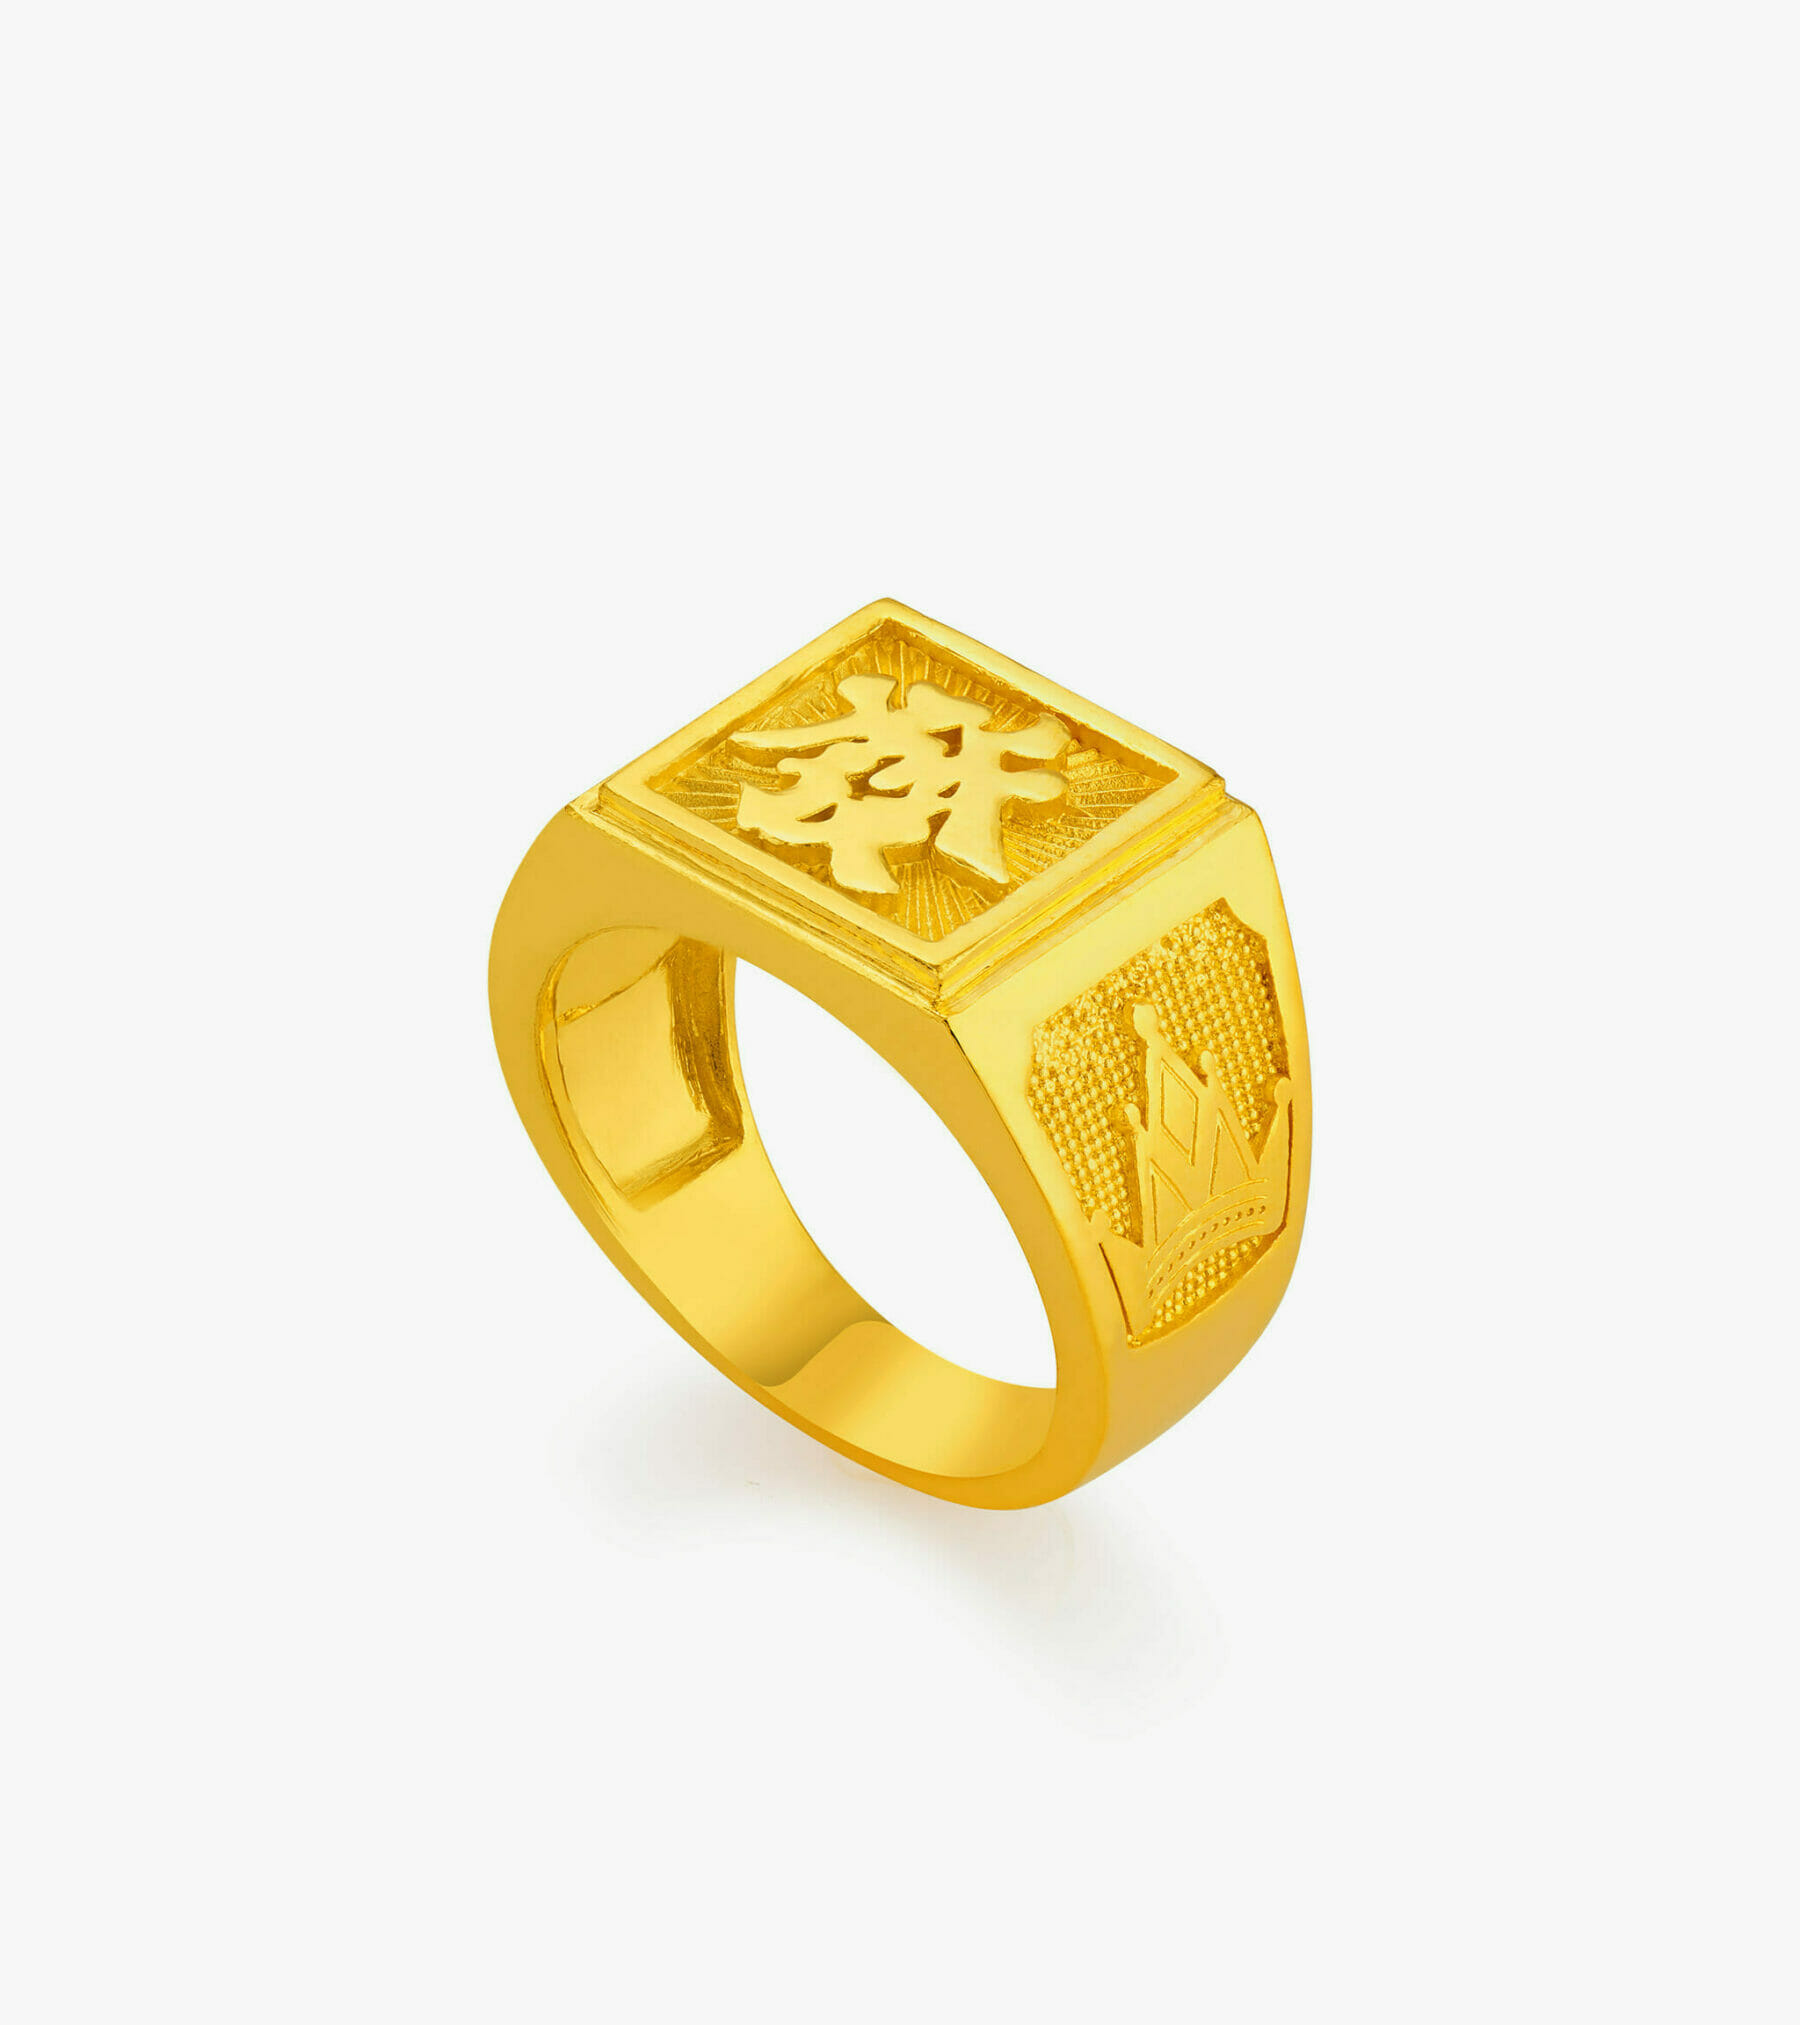 Nhẫn cưới nam 5 chỉ khắc 9999 mạ vàng 24k ( Thái Lan ) - Giá Tiki khuyến  mãi: 85,000đ - Mua ngay! - Tư vấn mua sắm & tiêu dùng trực tuyến Bigomart